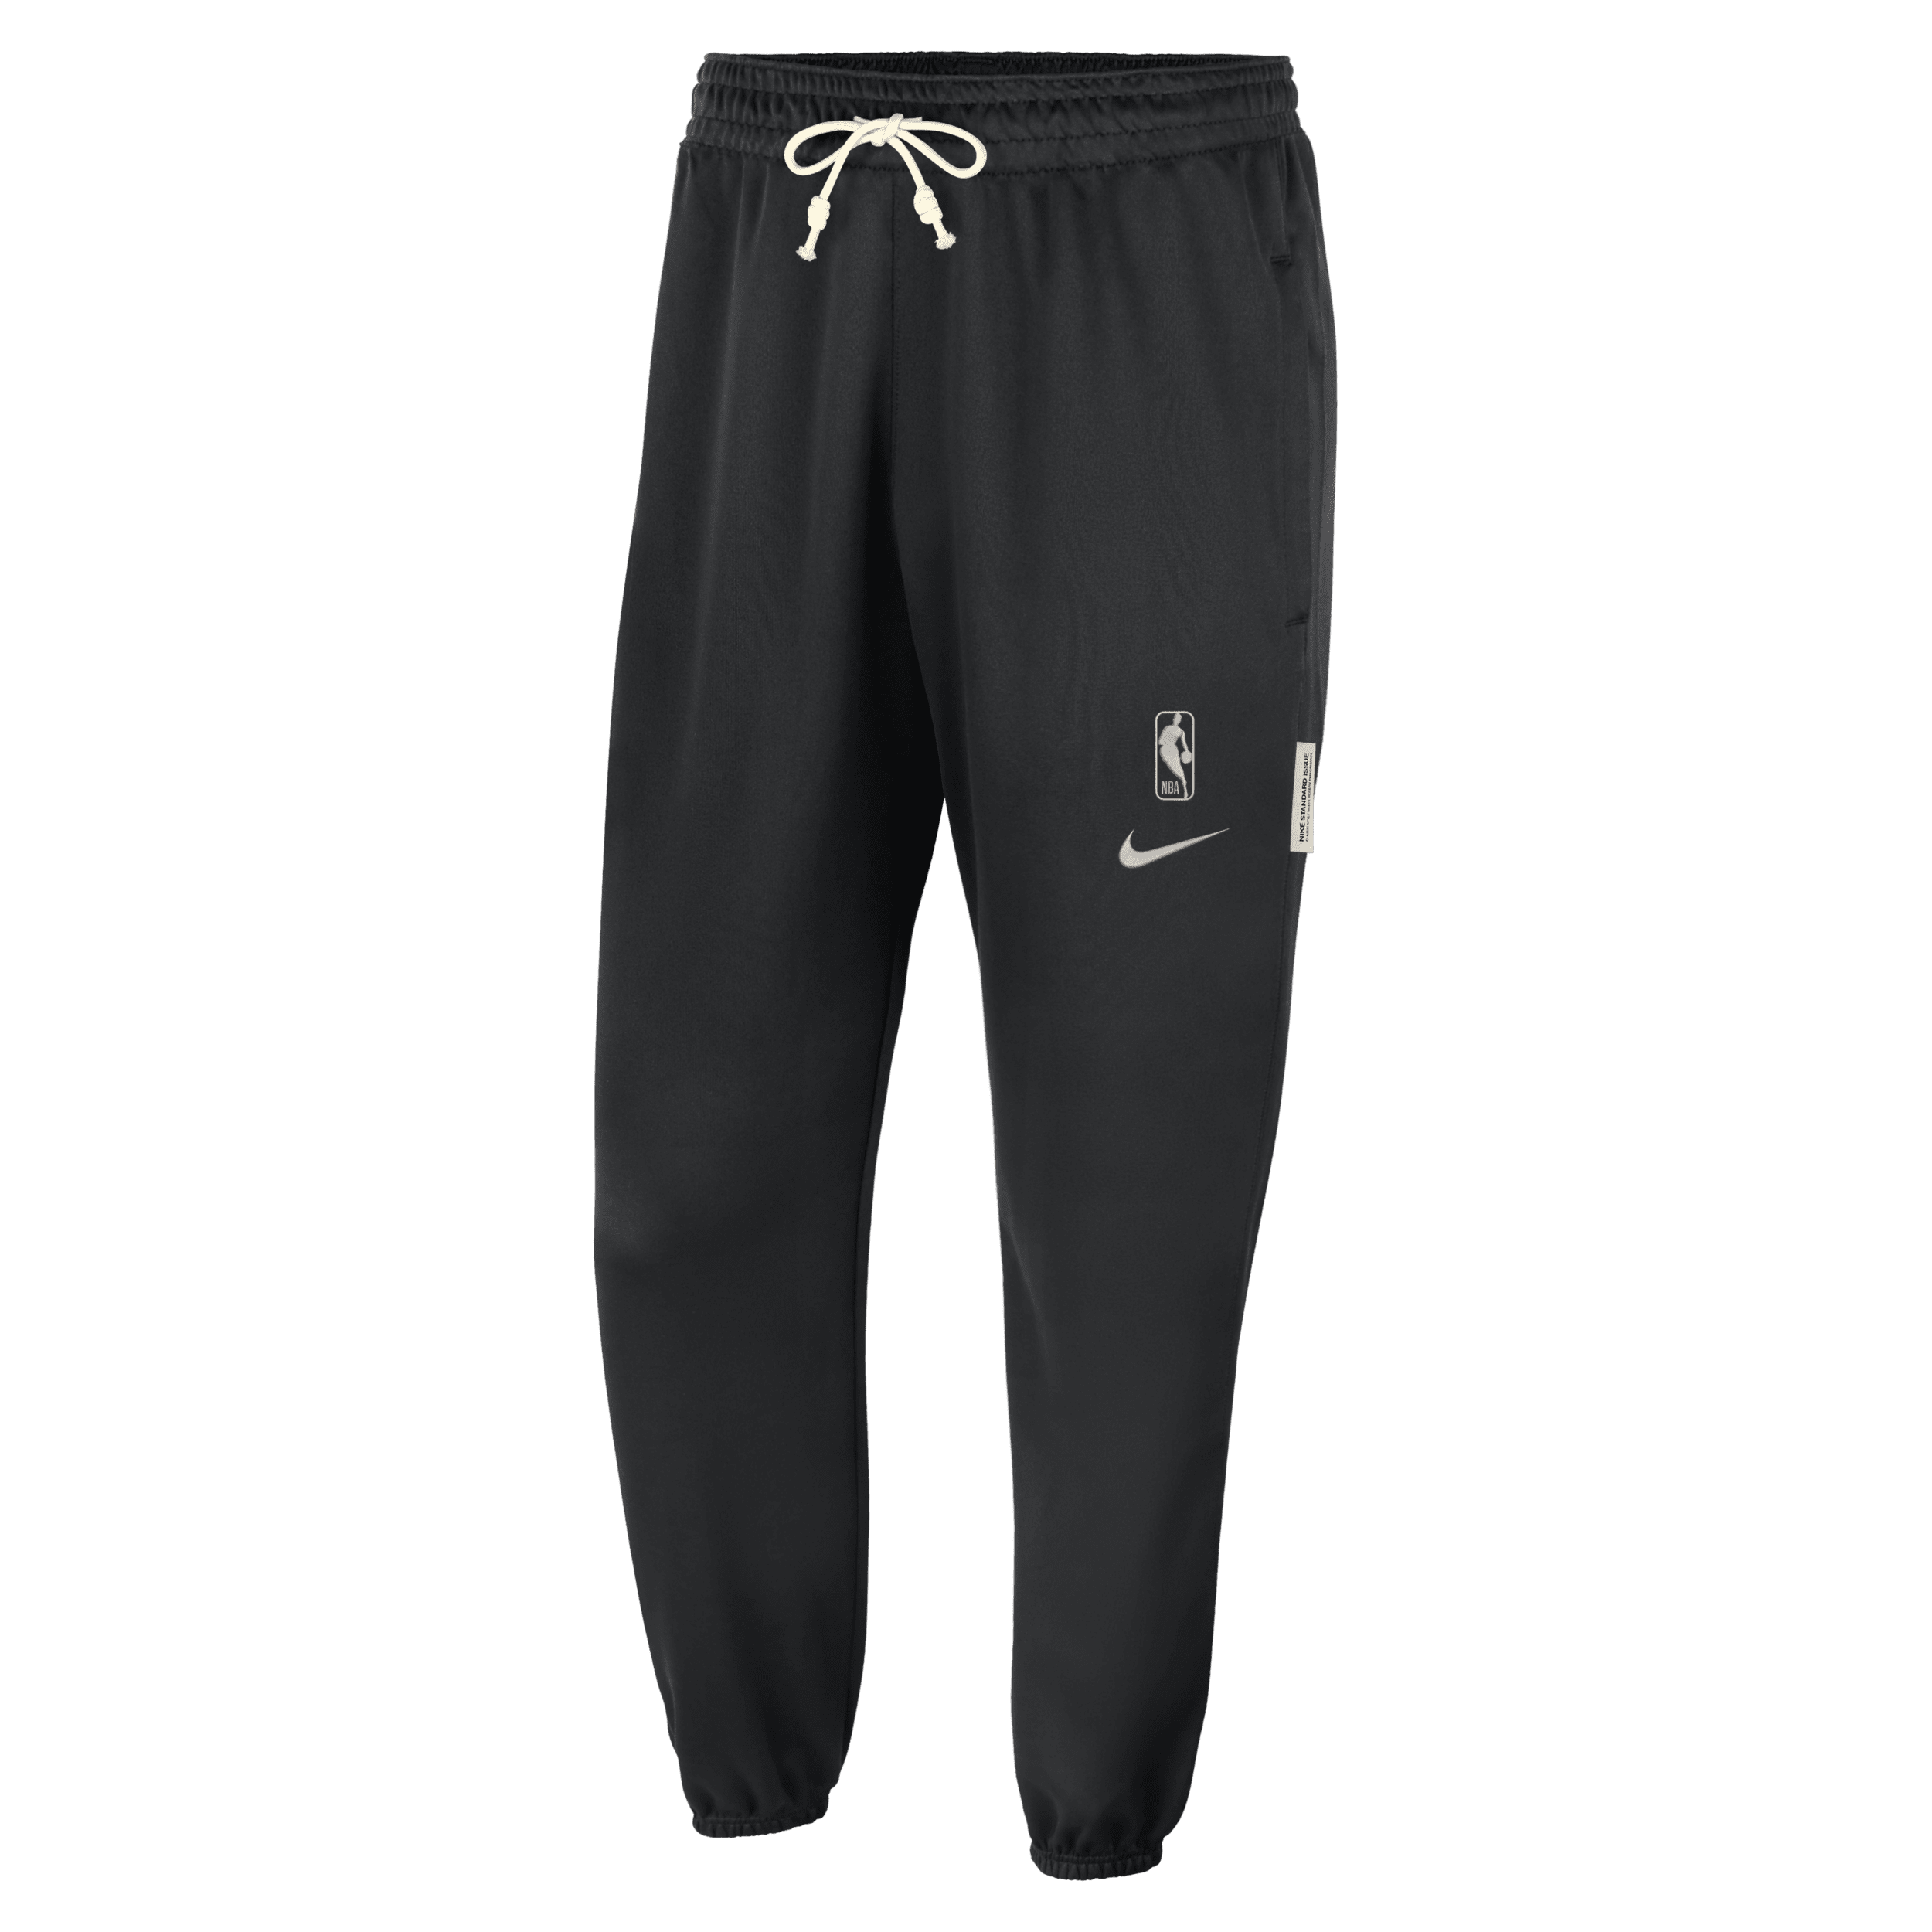 Team 31 Standard Issue Nike Dri-FIT-NBA-bukser til mænd - sort